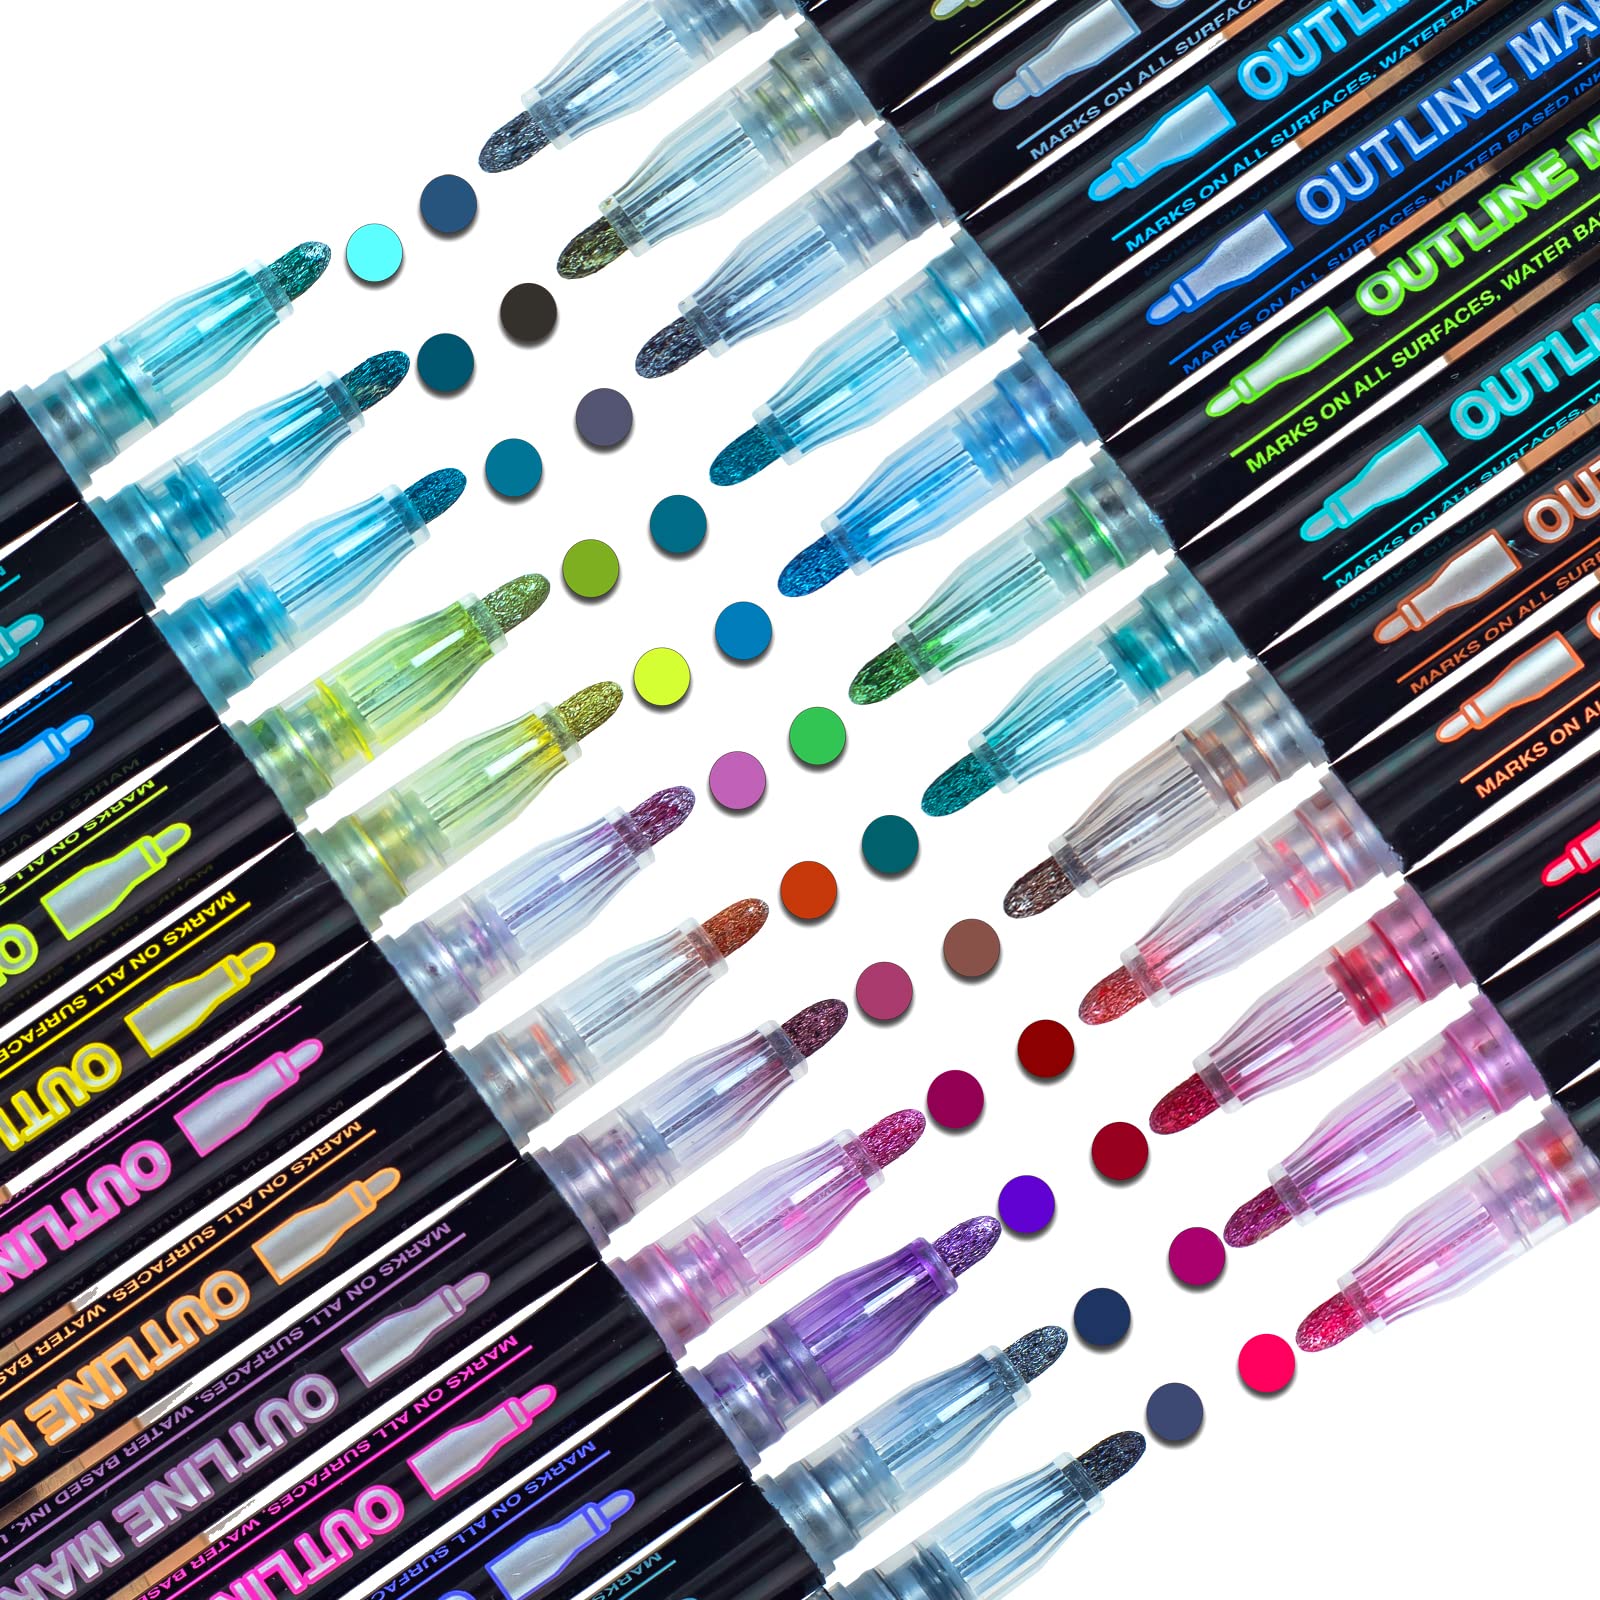 24 Colors Pens Double Line Markers Metallic Outline Pens Set Sparkle Cool Magic Glitter Dazzle Pen Art Paint Drawing Kid Gift